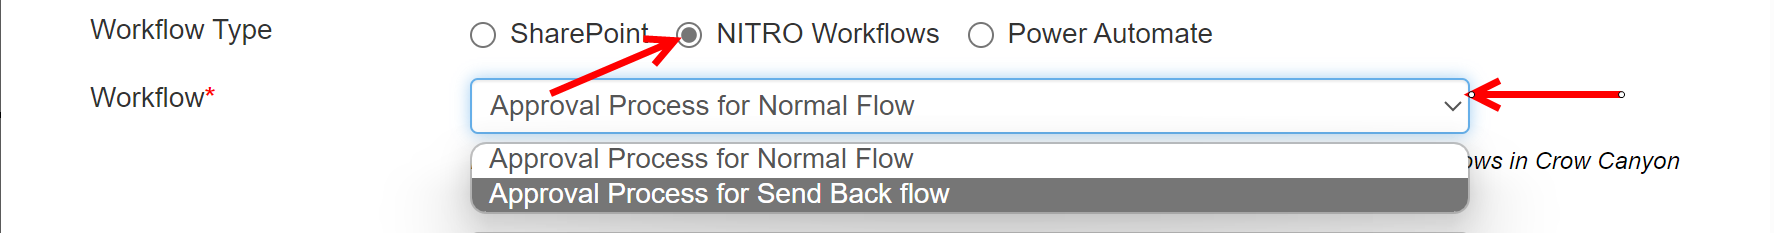 Nitro workflows invoke workflow